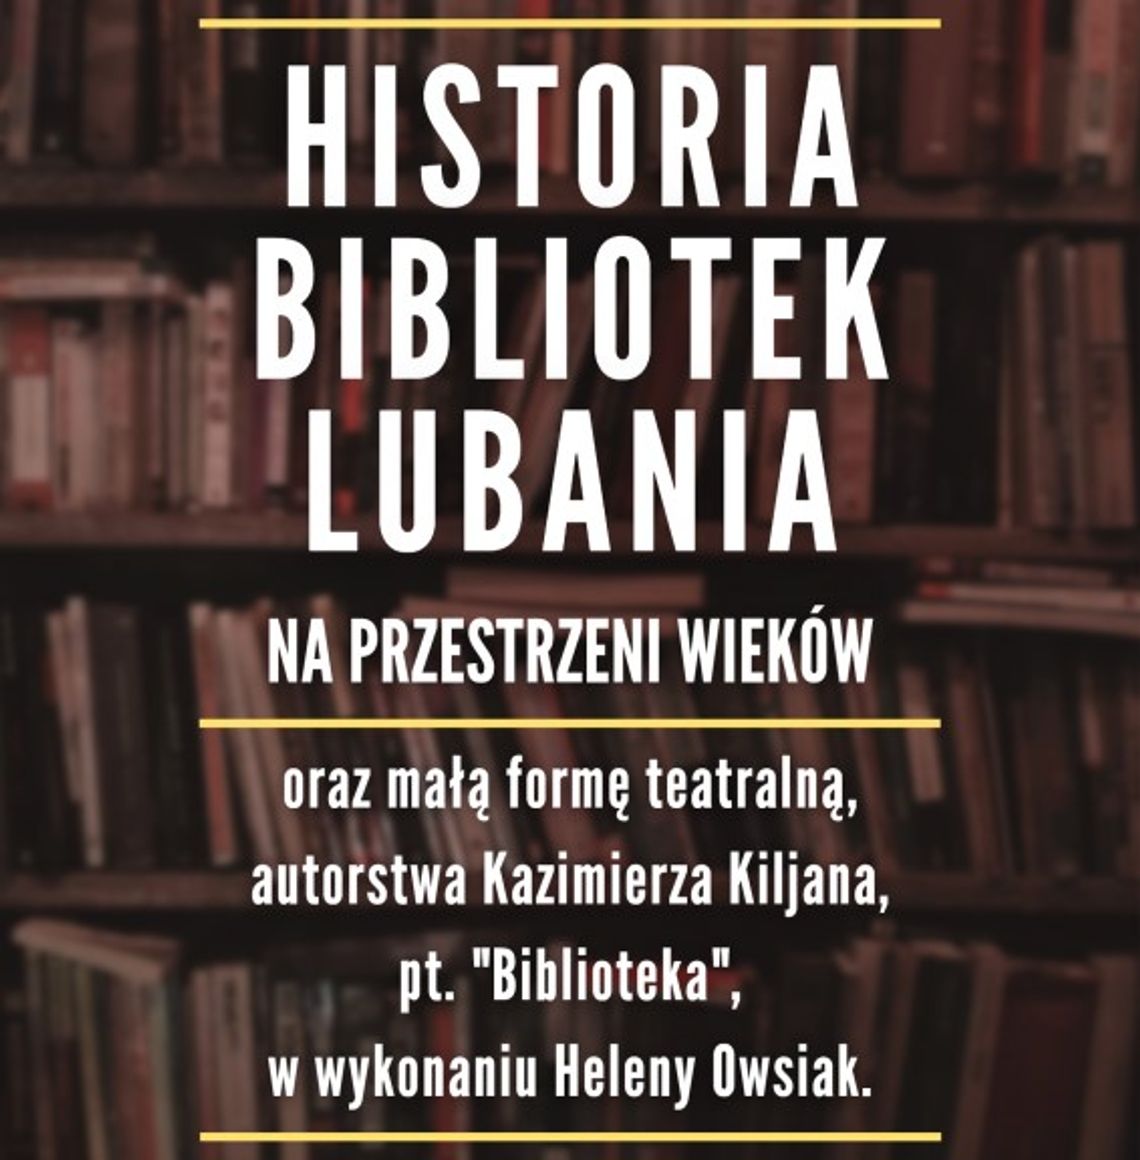 Biblioteka zaprasza na wykład o lubańskich bibliotekach na przestrzeni wieków